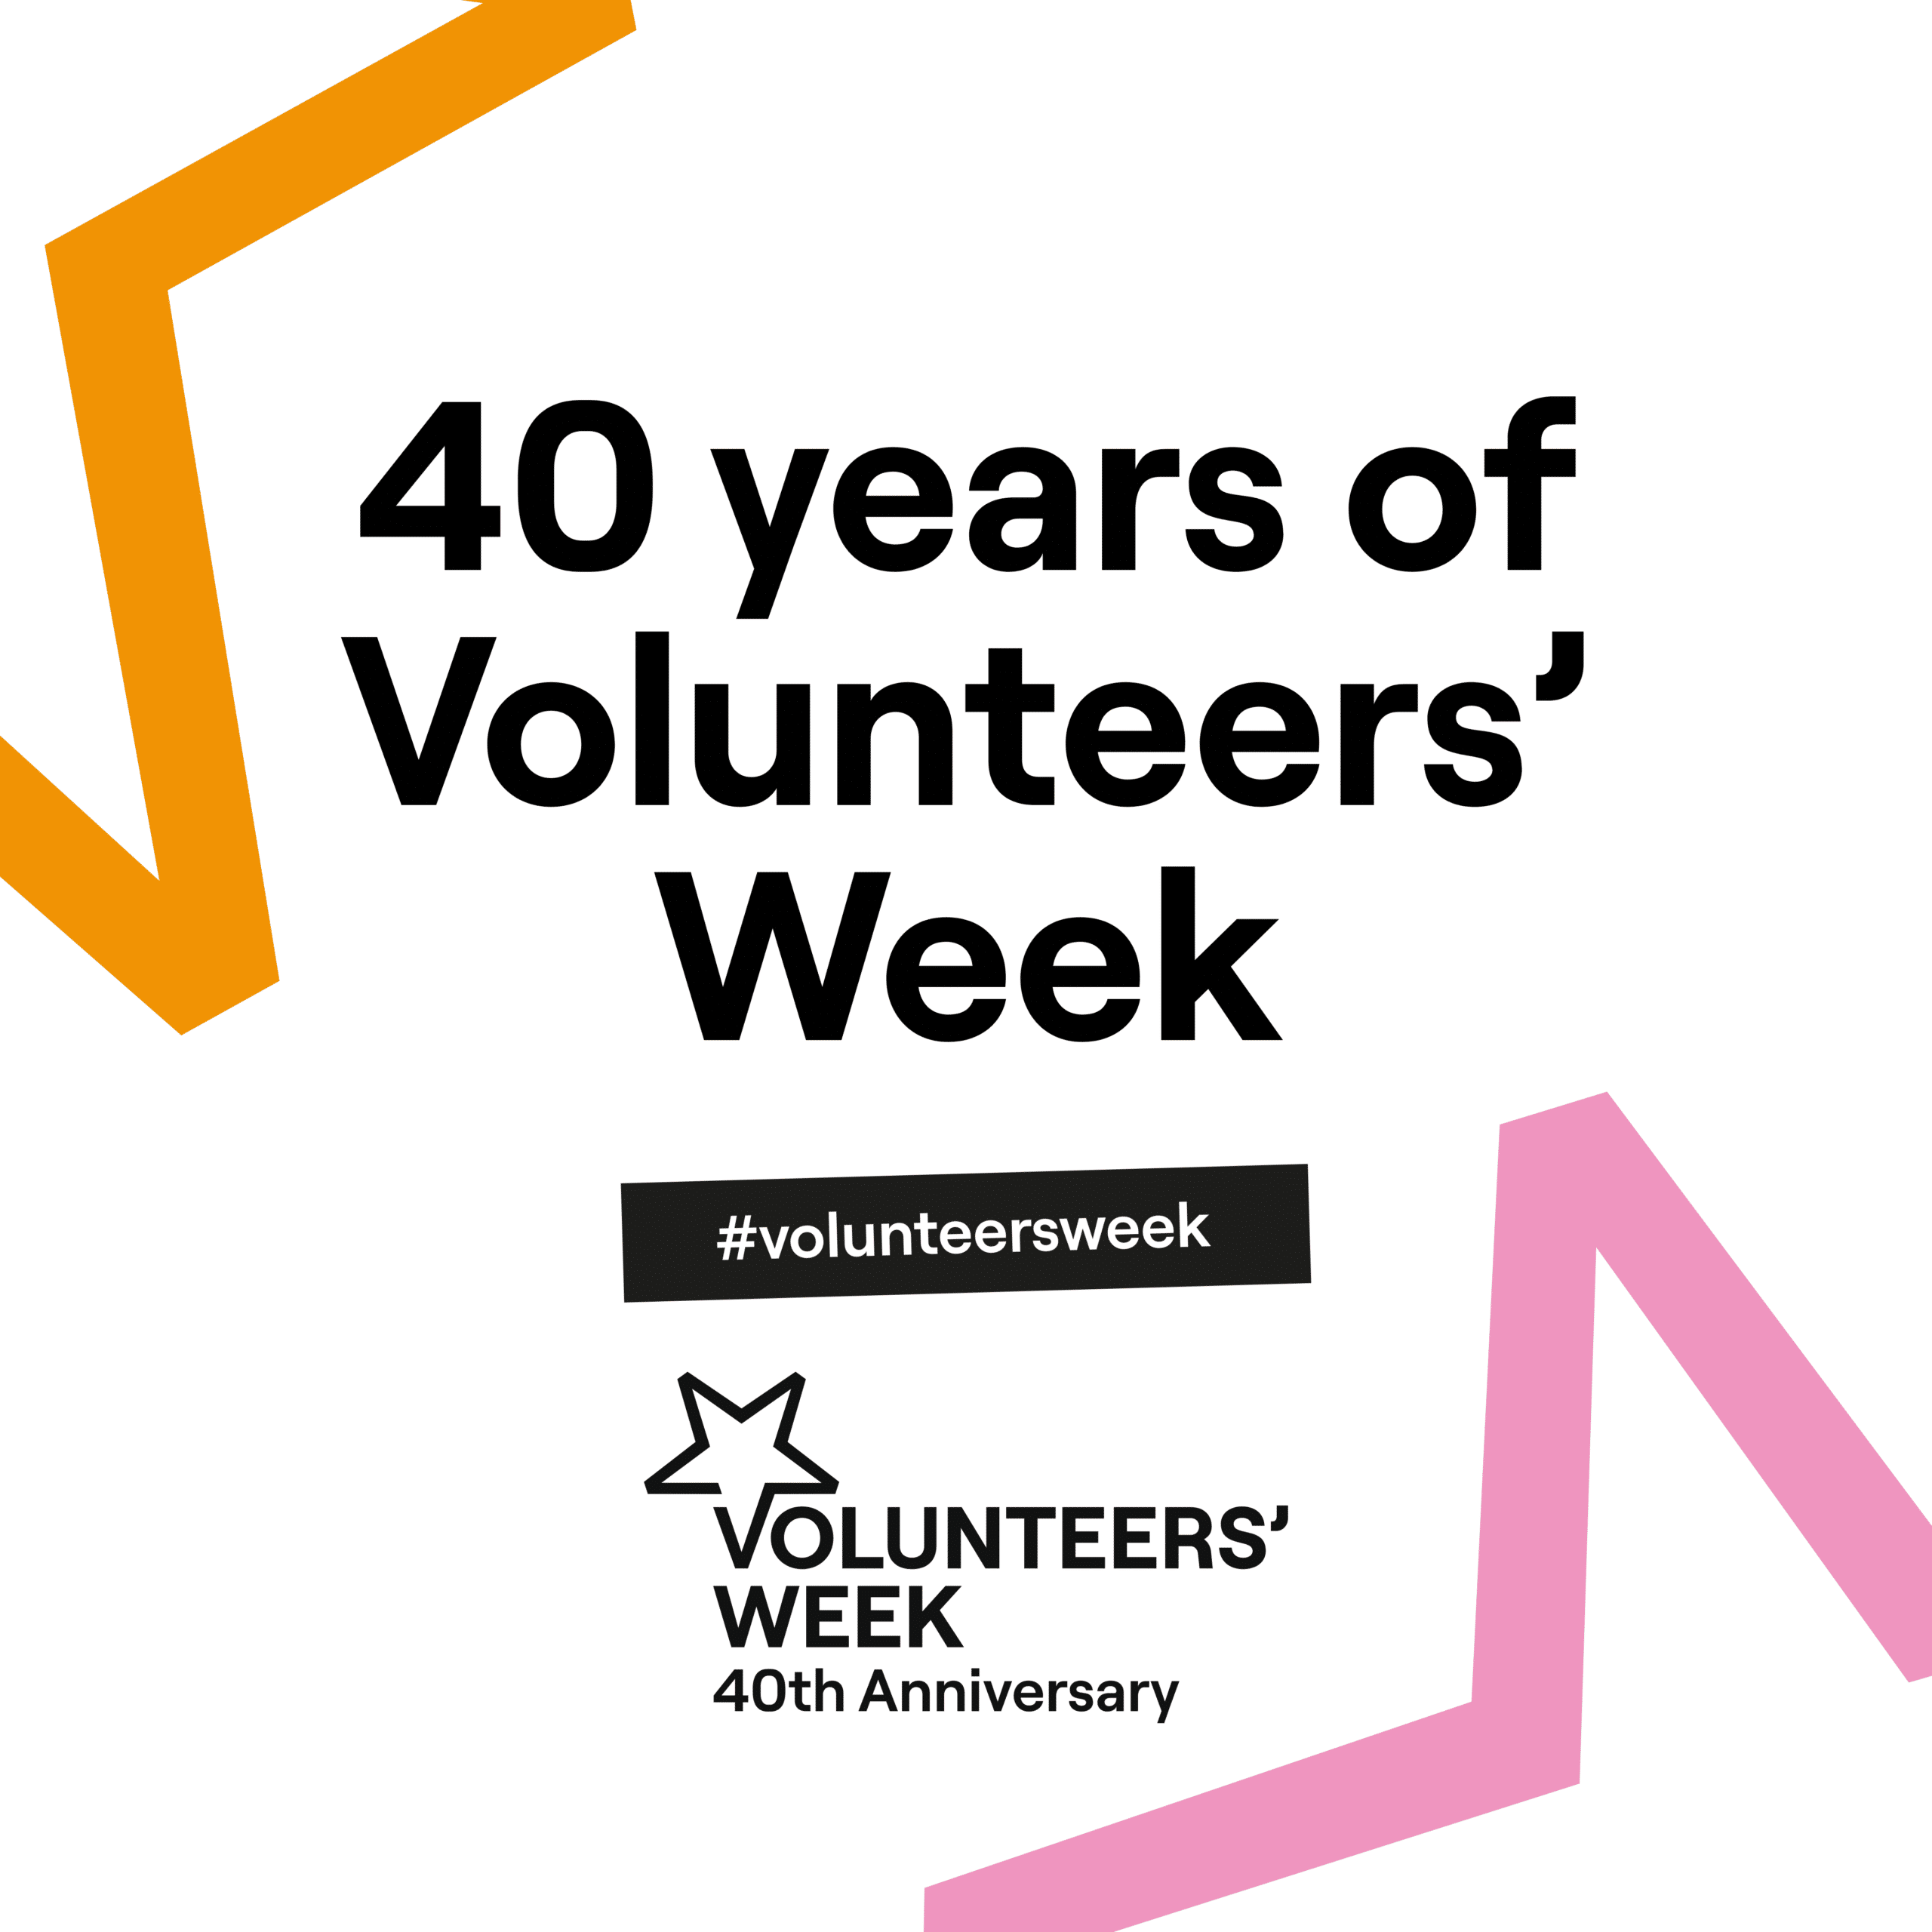 40 years of volunteers' week